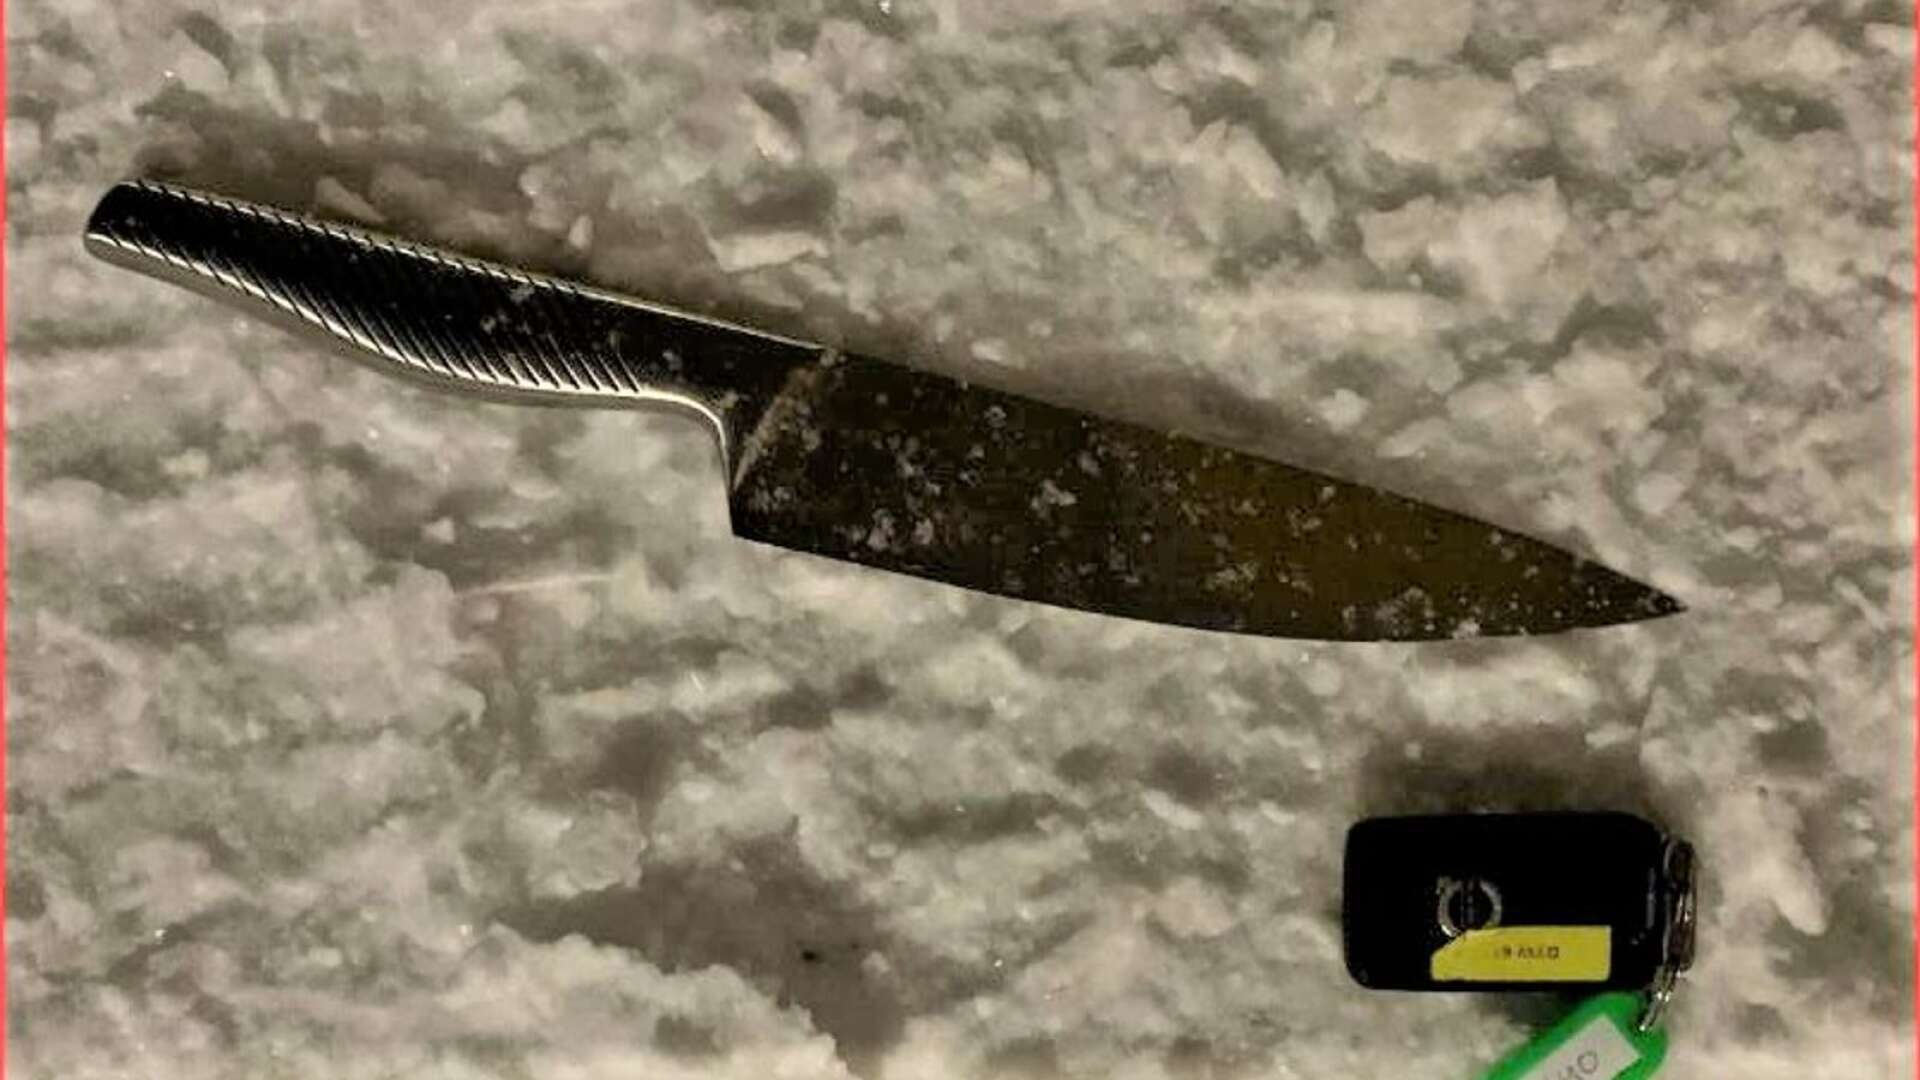 Offret hotades med den här kniven på insektsvägen.